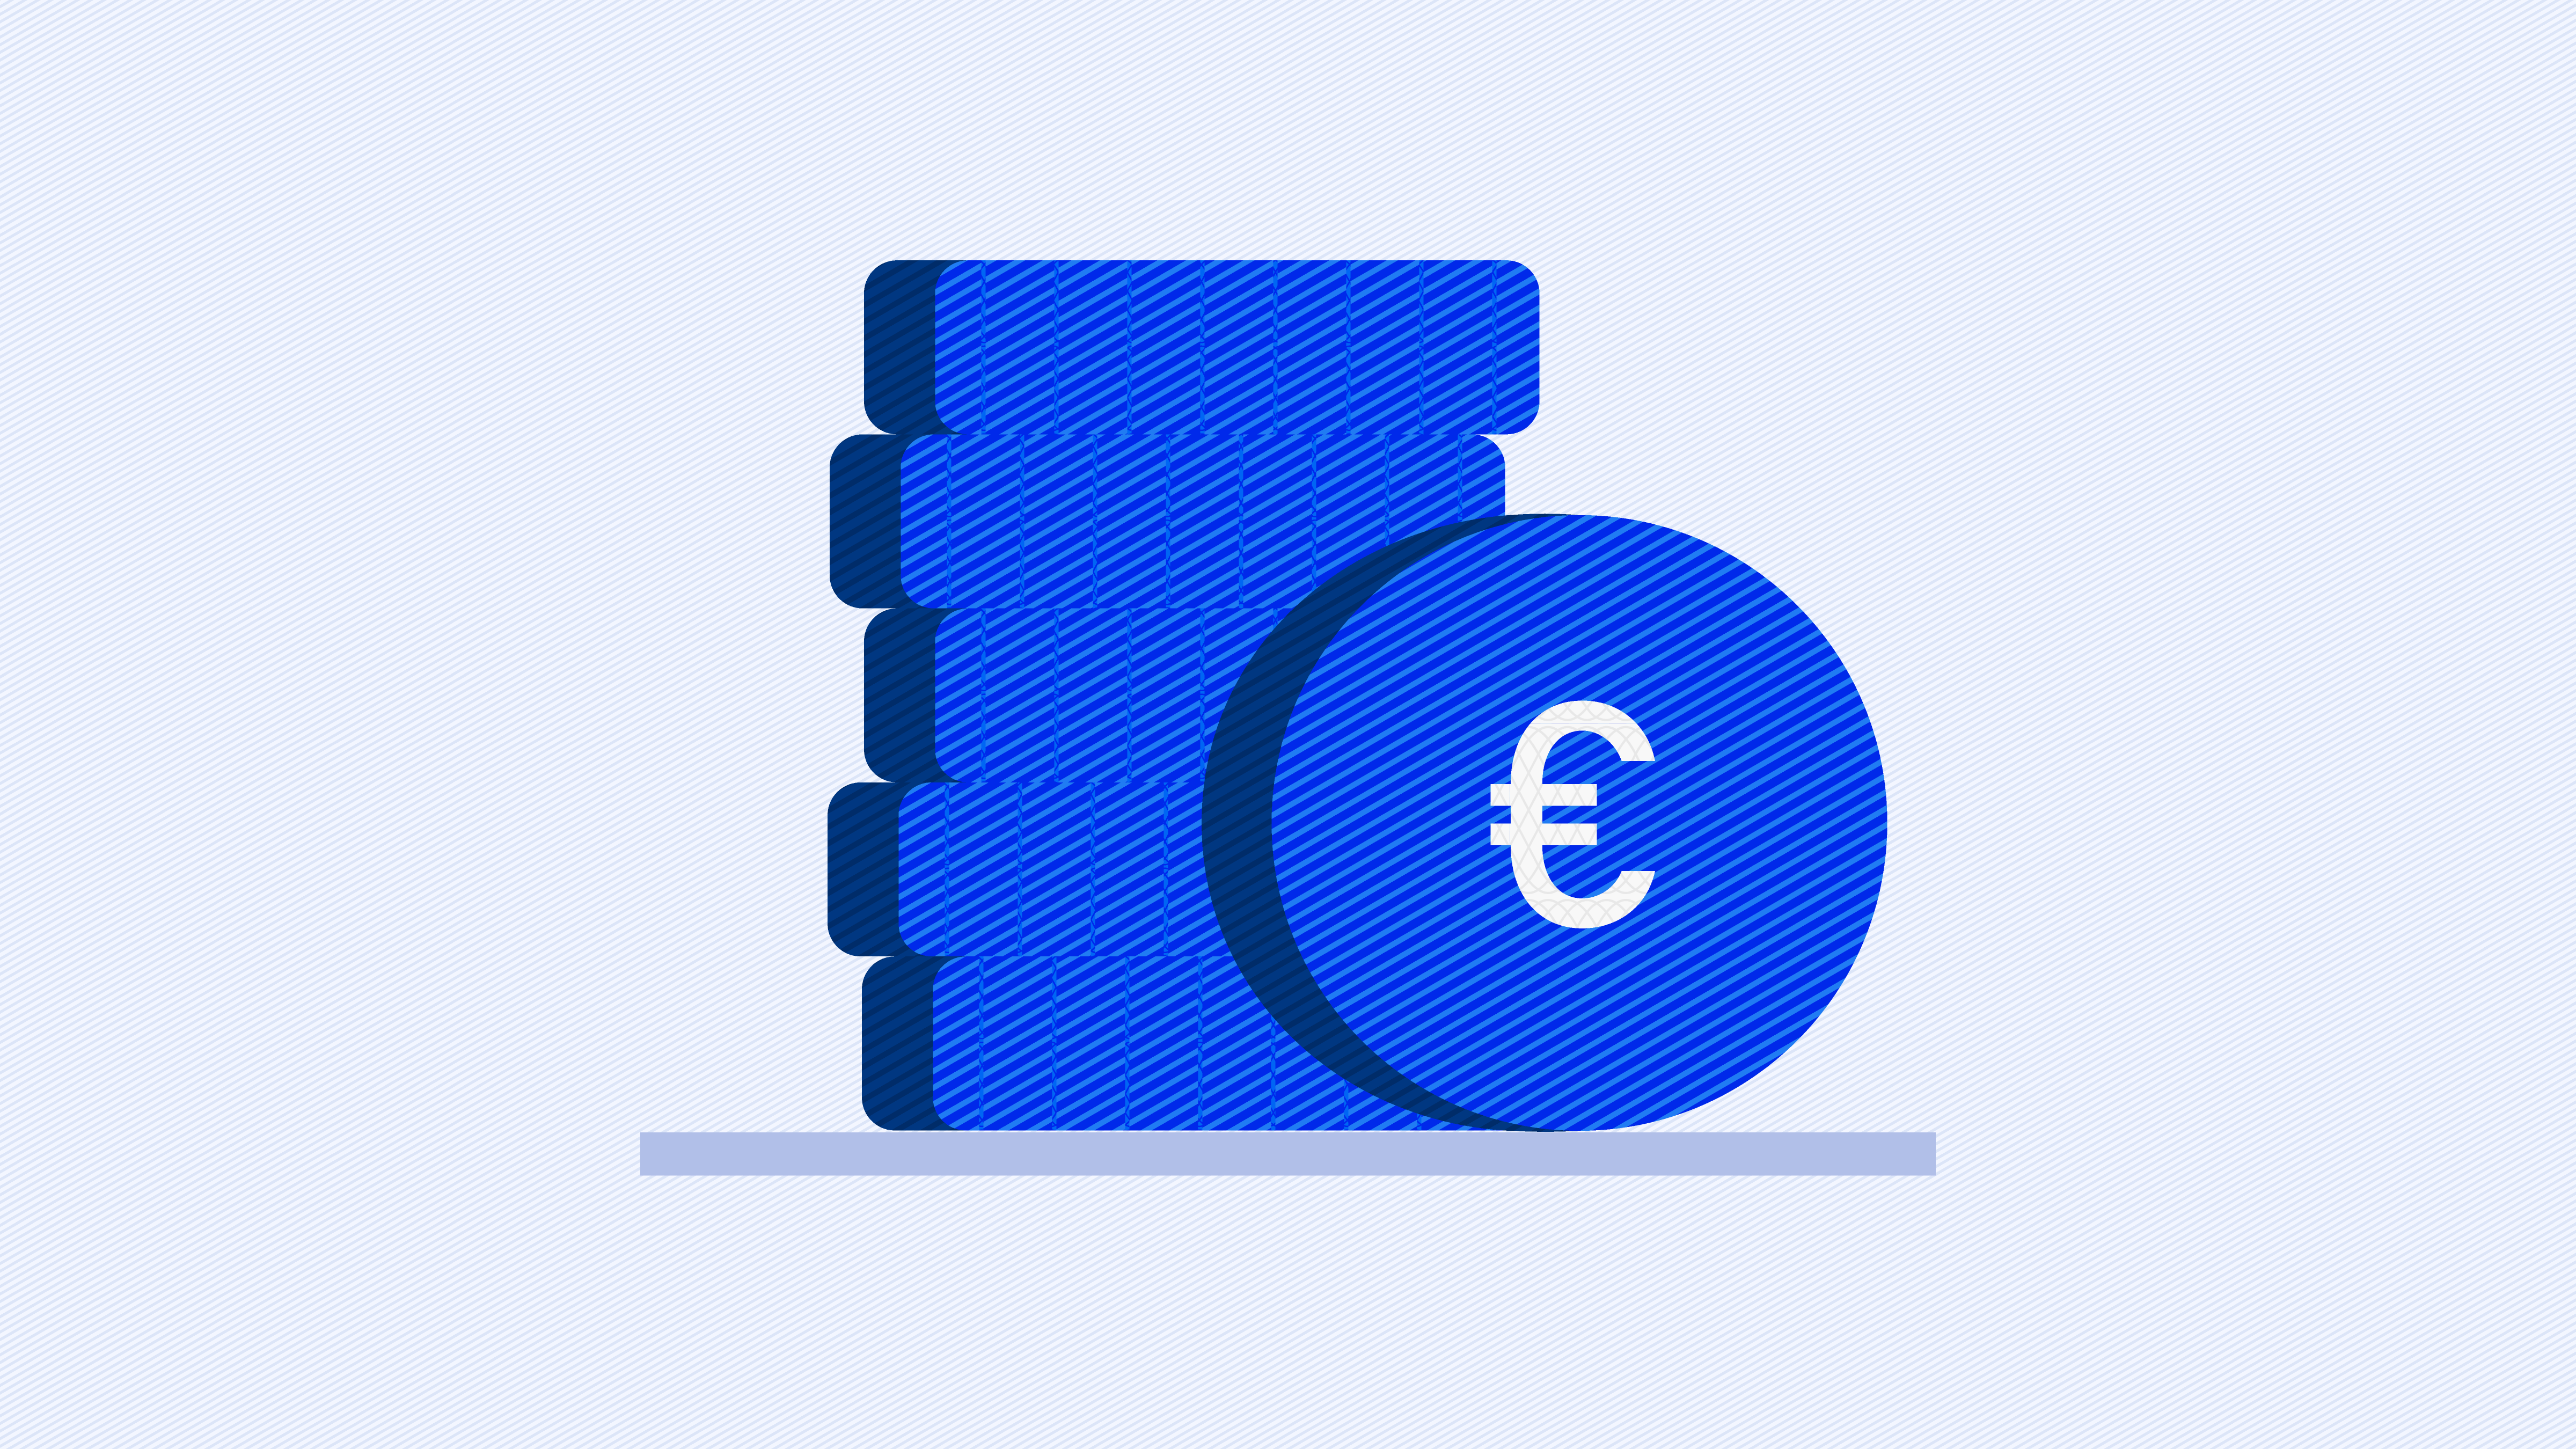 Euro (€)